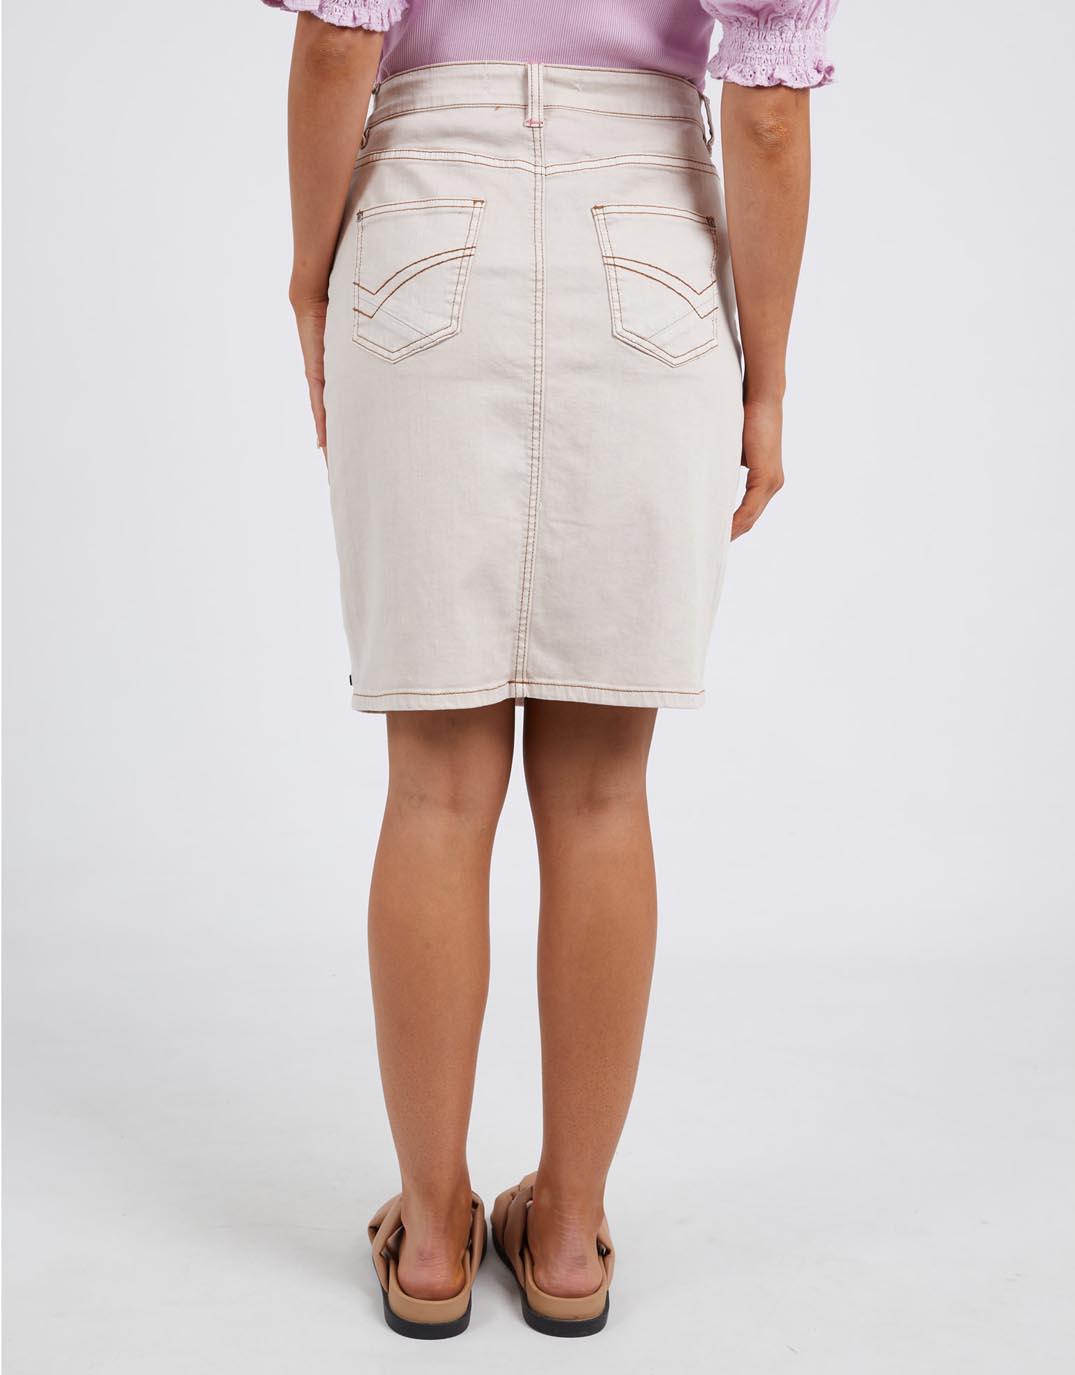 Elm - Belle Denim Skirt - Oat - White & Co Living Skirts